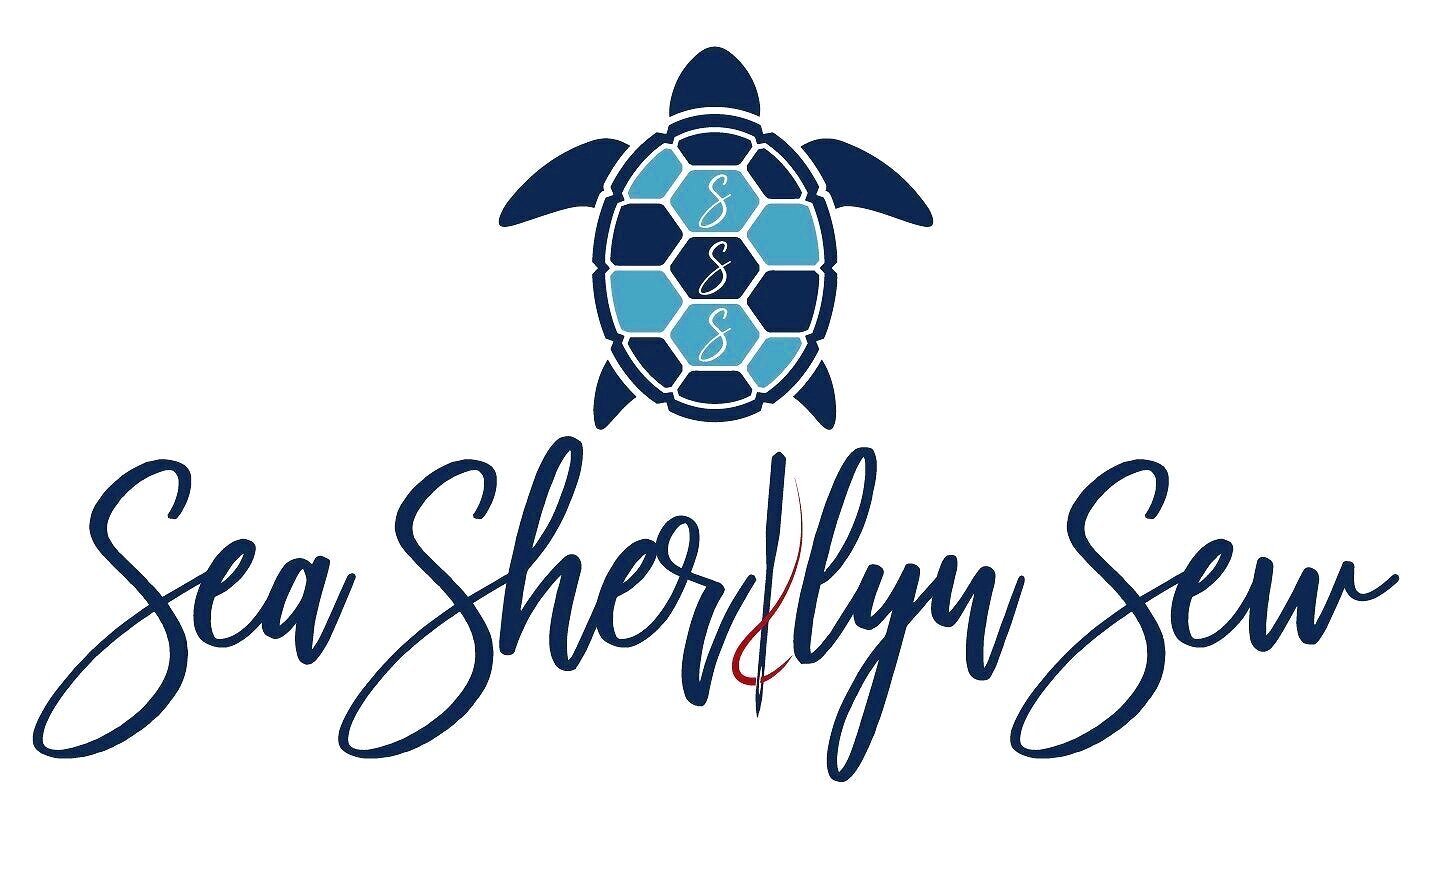 Sea Sherilyn Sew